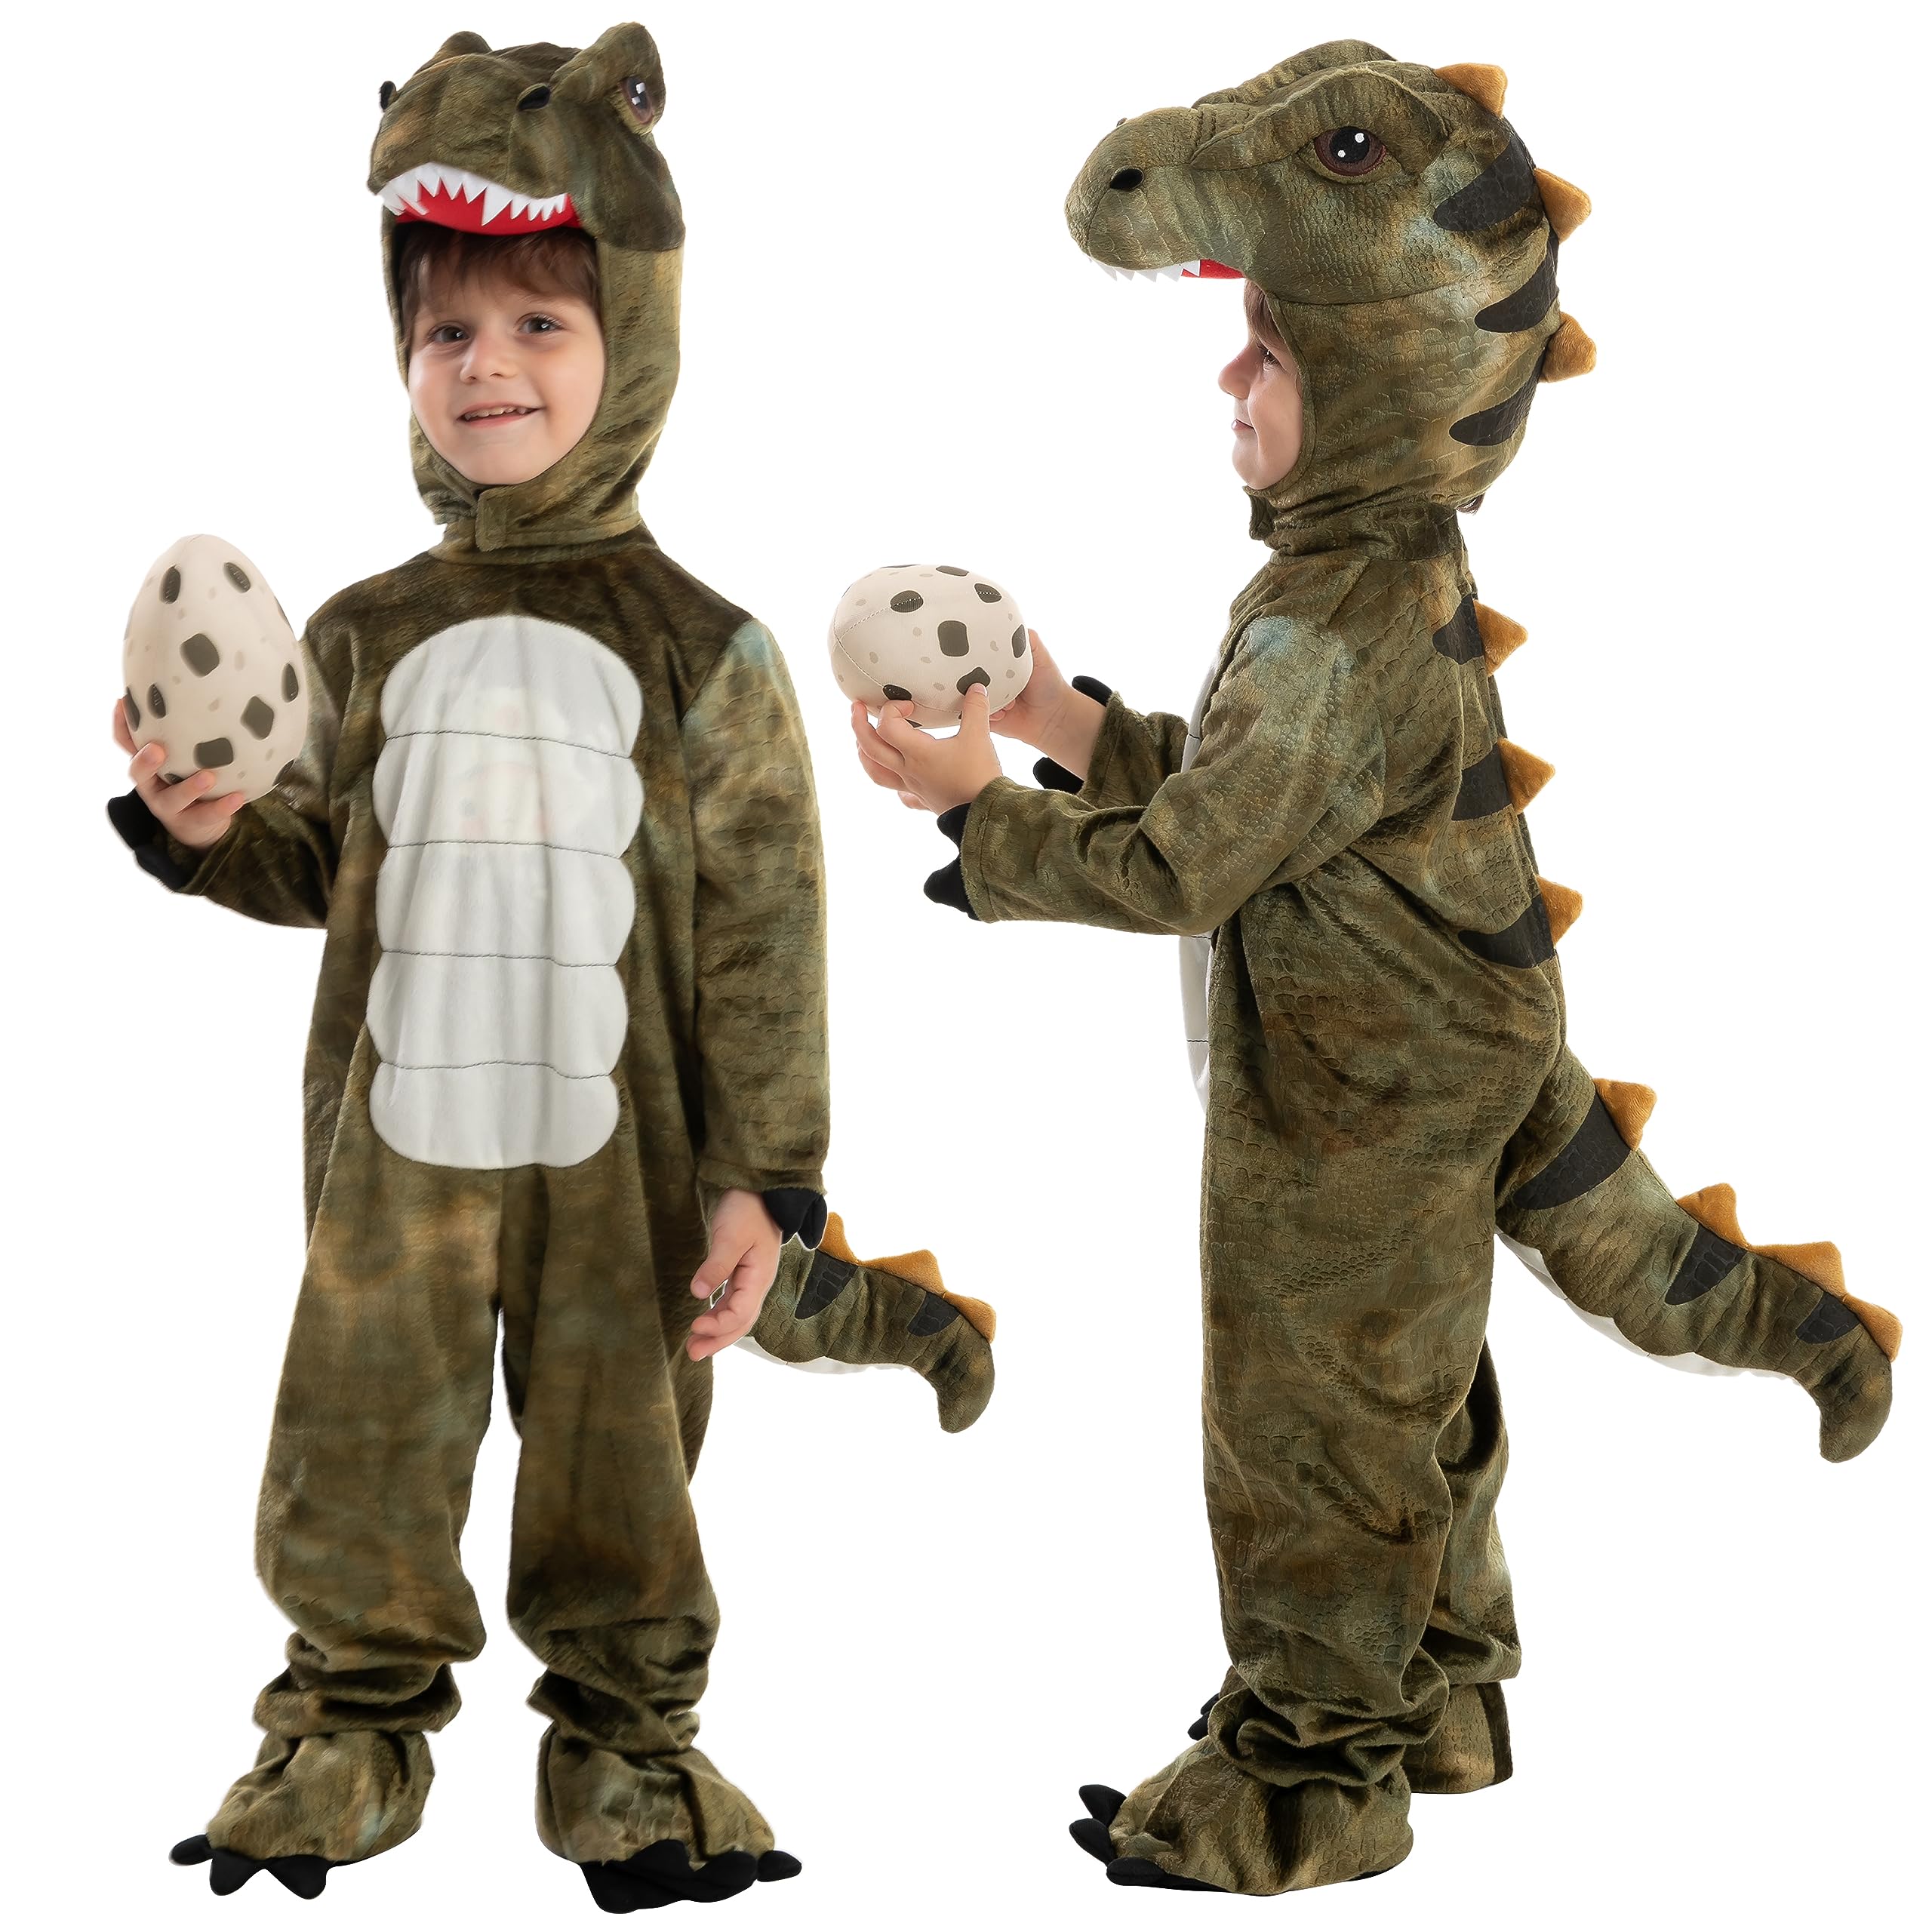 Spooktacular Creations Kinder Unisex T-Rex Realistisches Dinosaurier Kostüm für Halloween Dinosaurier Dress Up Party, Rollenspiel und Cosplay (18-24 months)